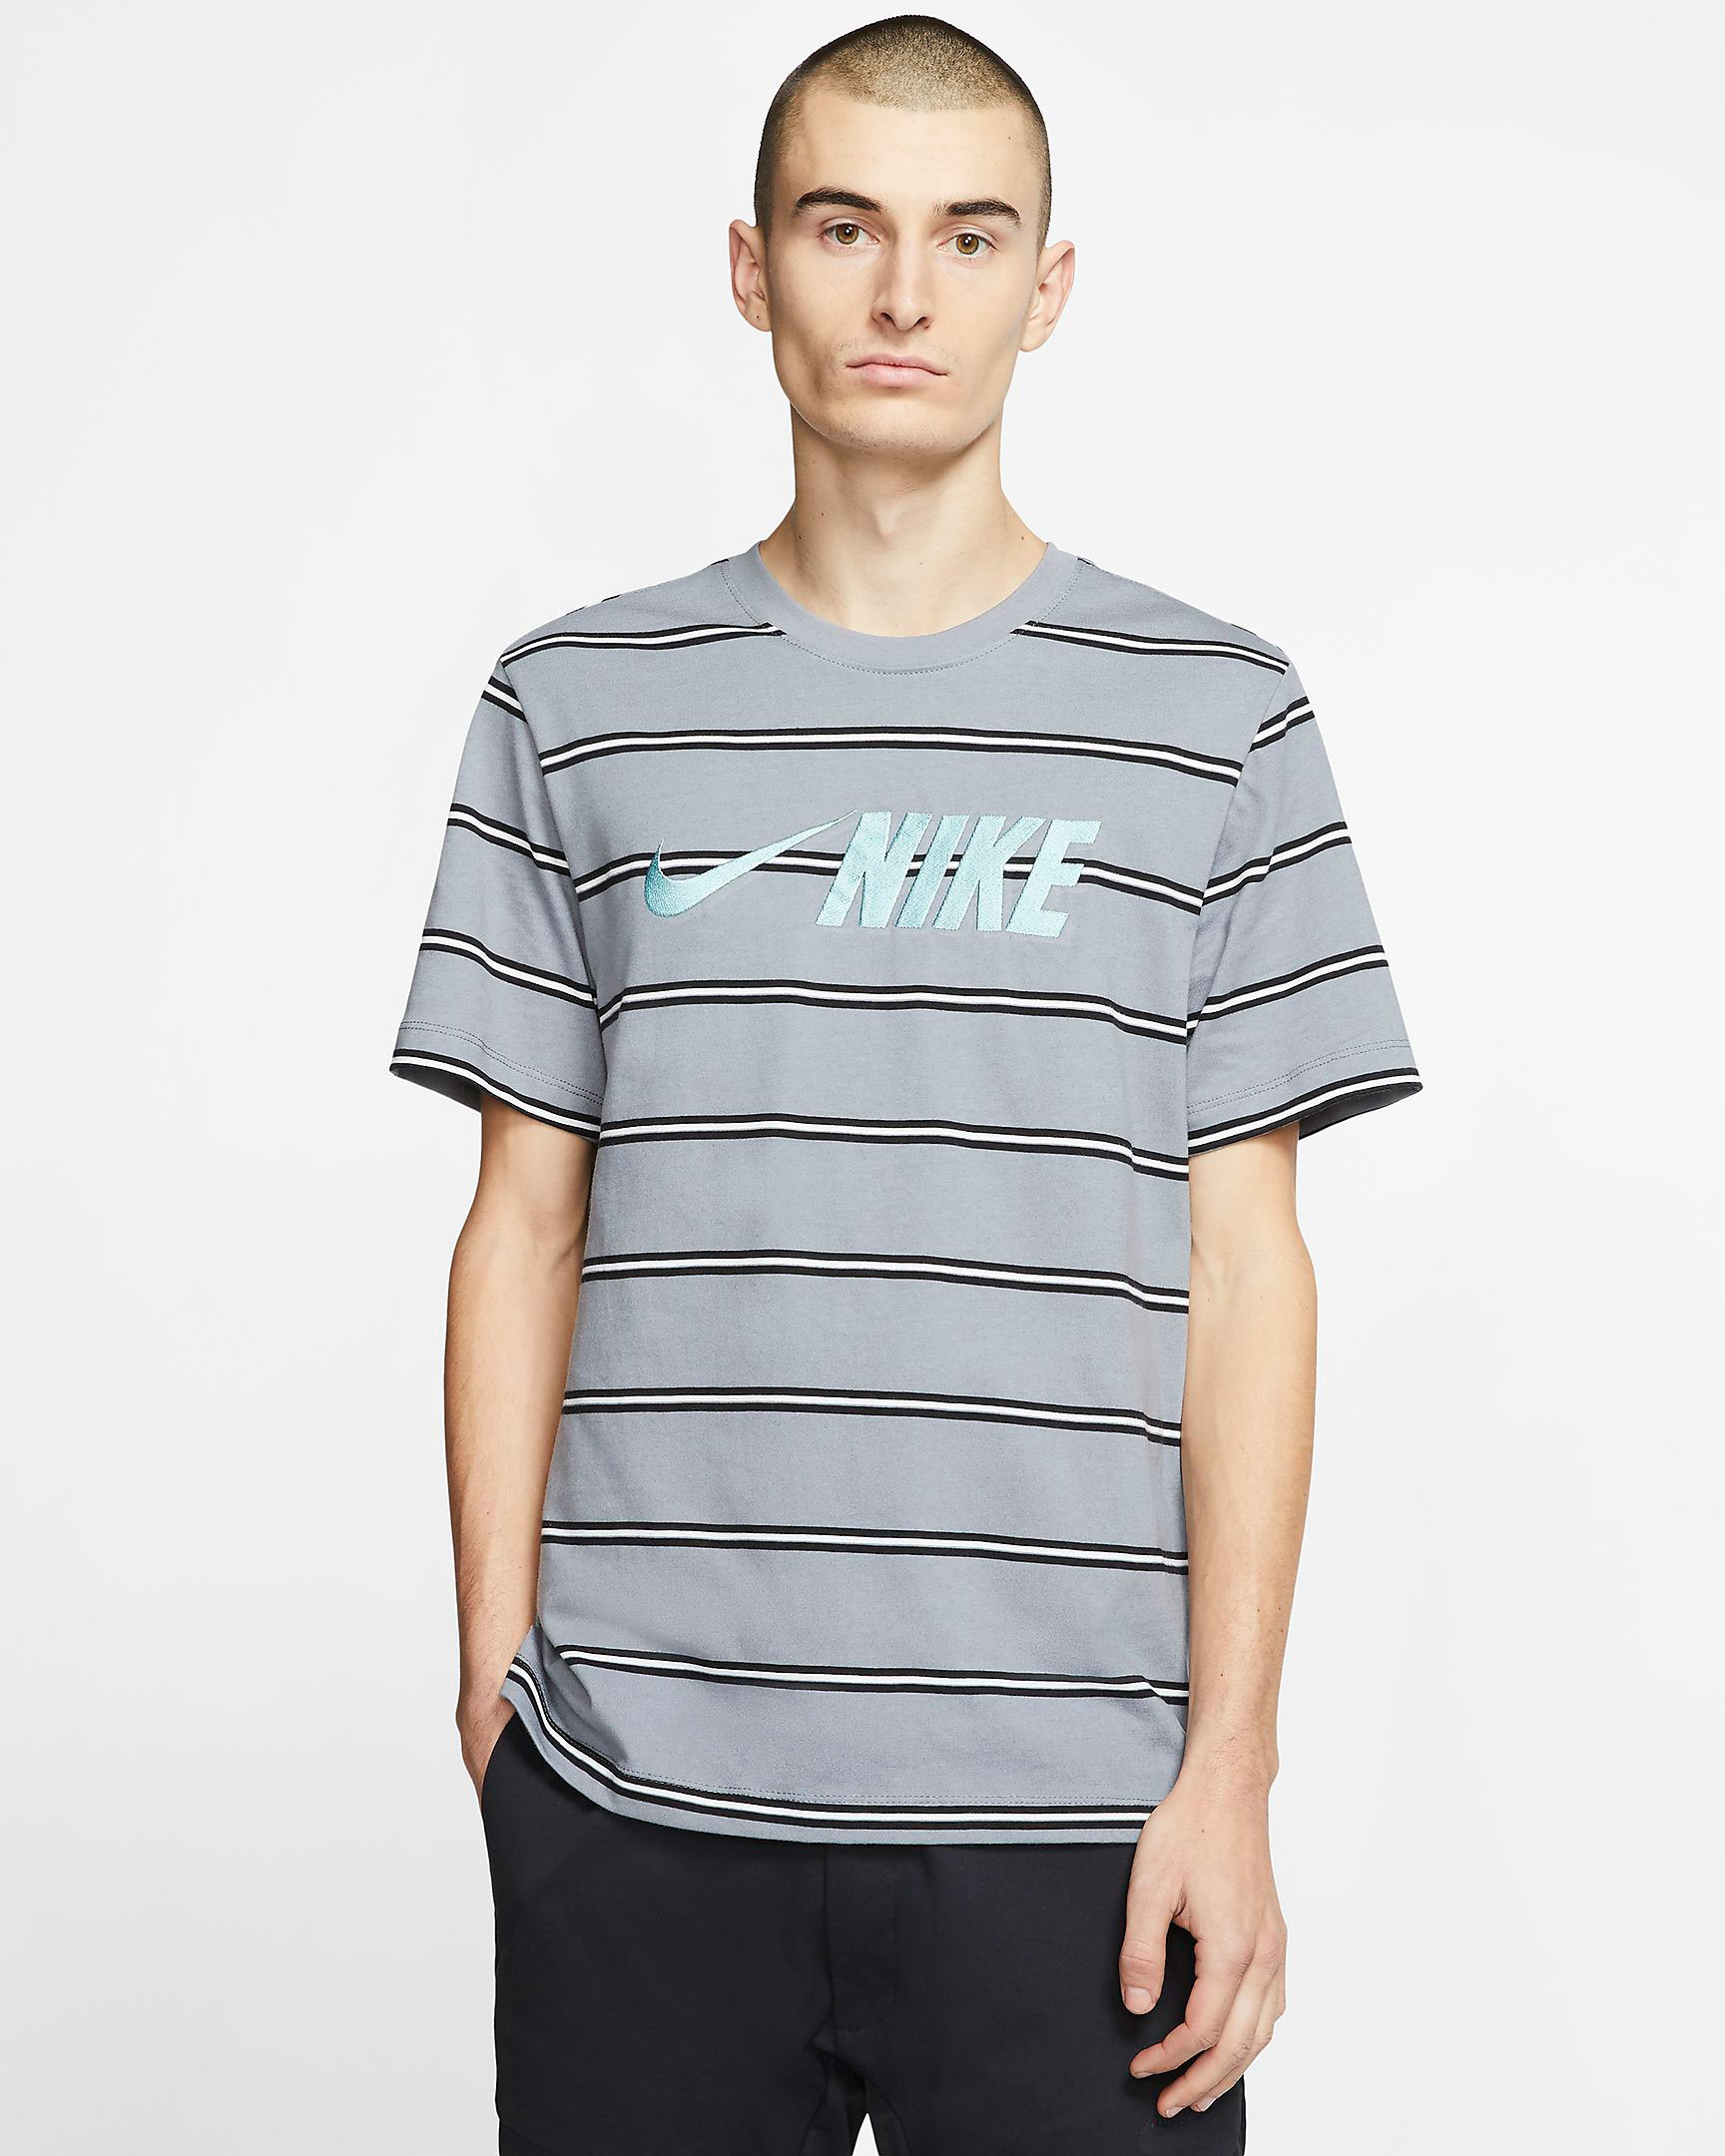 nike-air-max-90-hyper-turquoise-shirt-2